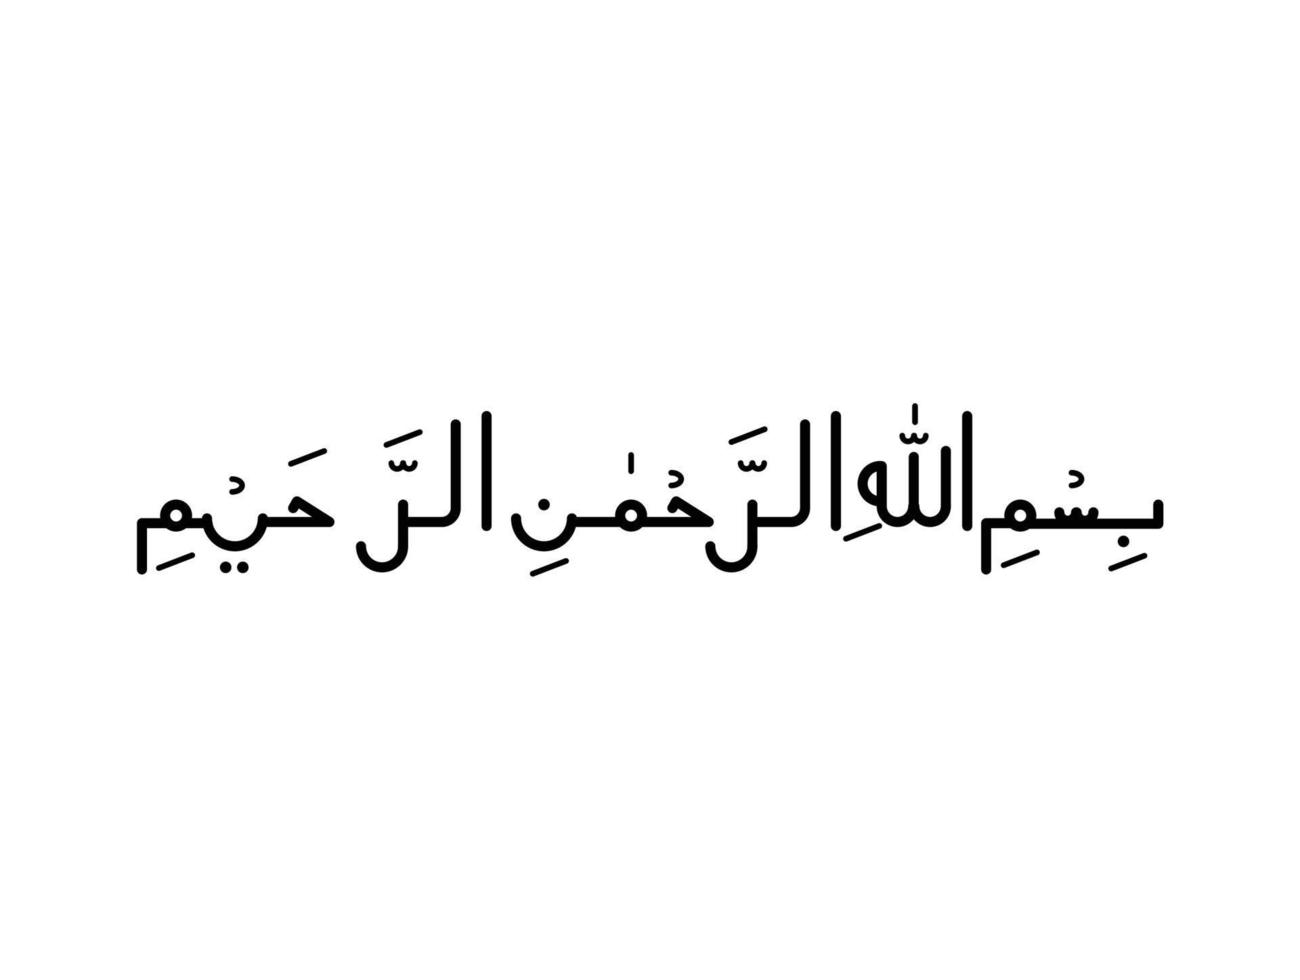 bismillah em nome de allah arte árabe o primeiro verso do Alcorão traduzido como em nome de deus o misericordioso o compassivo no vetor islâmico de caligrafia naskh.